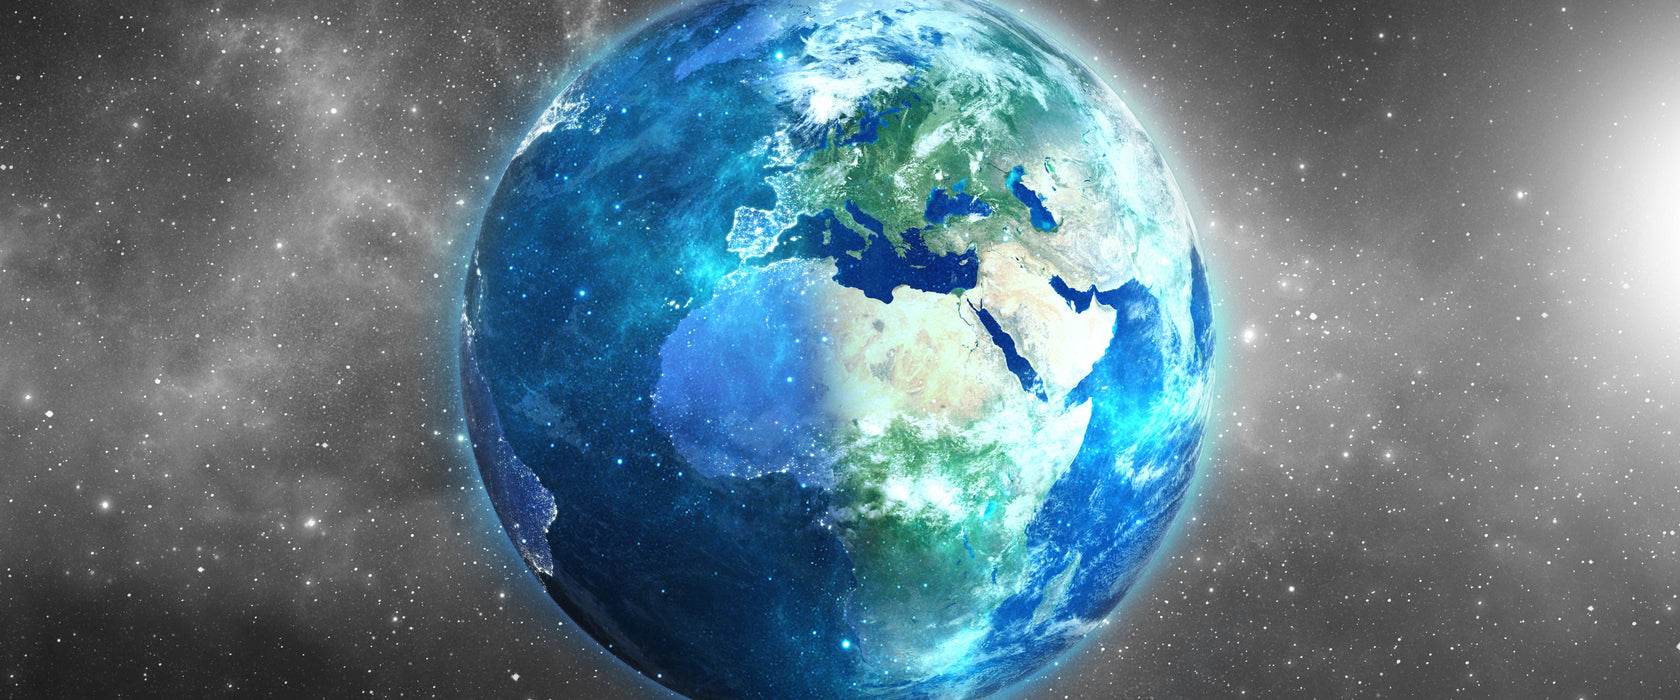 Unsere Erde im Weltall, Glasbild Panorama